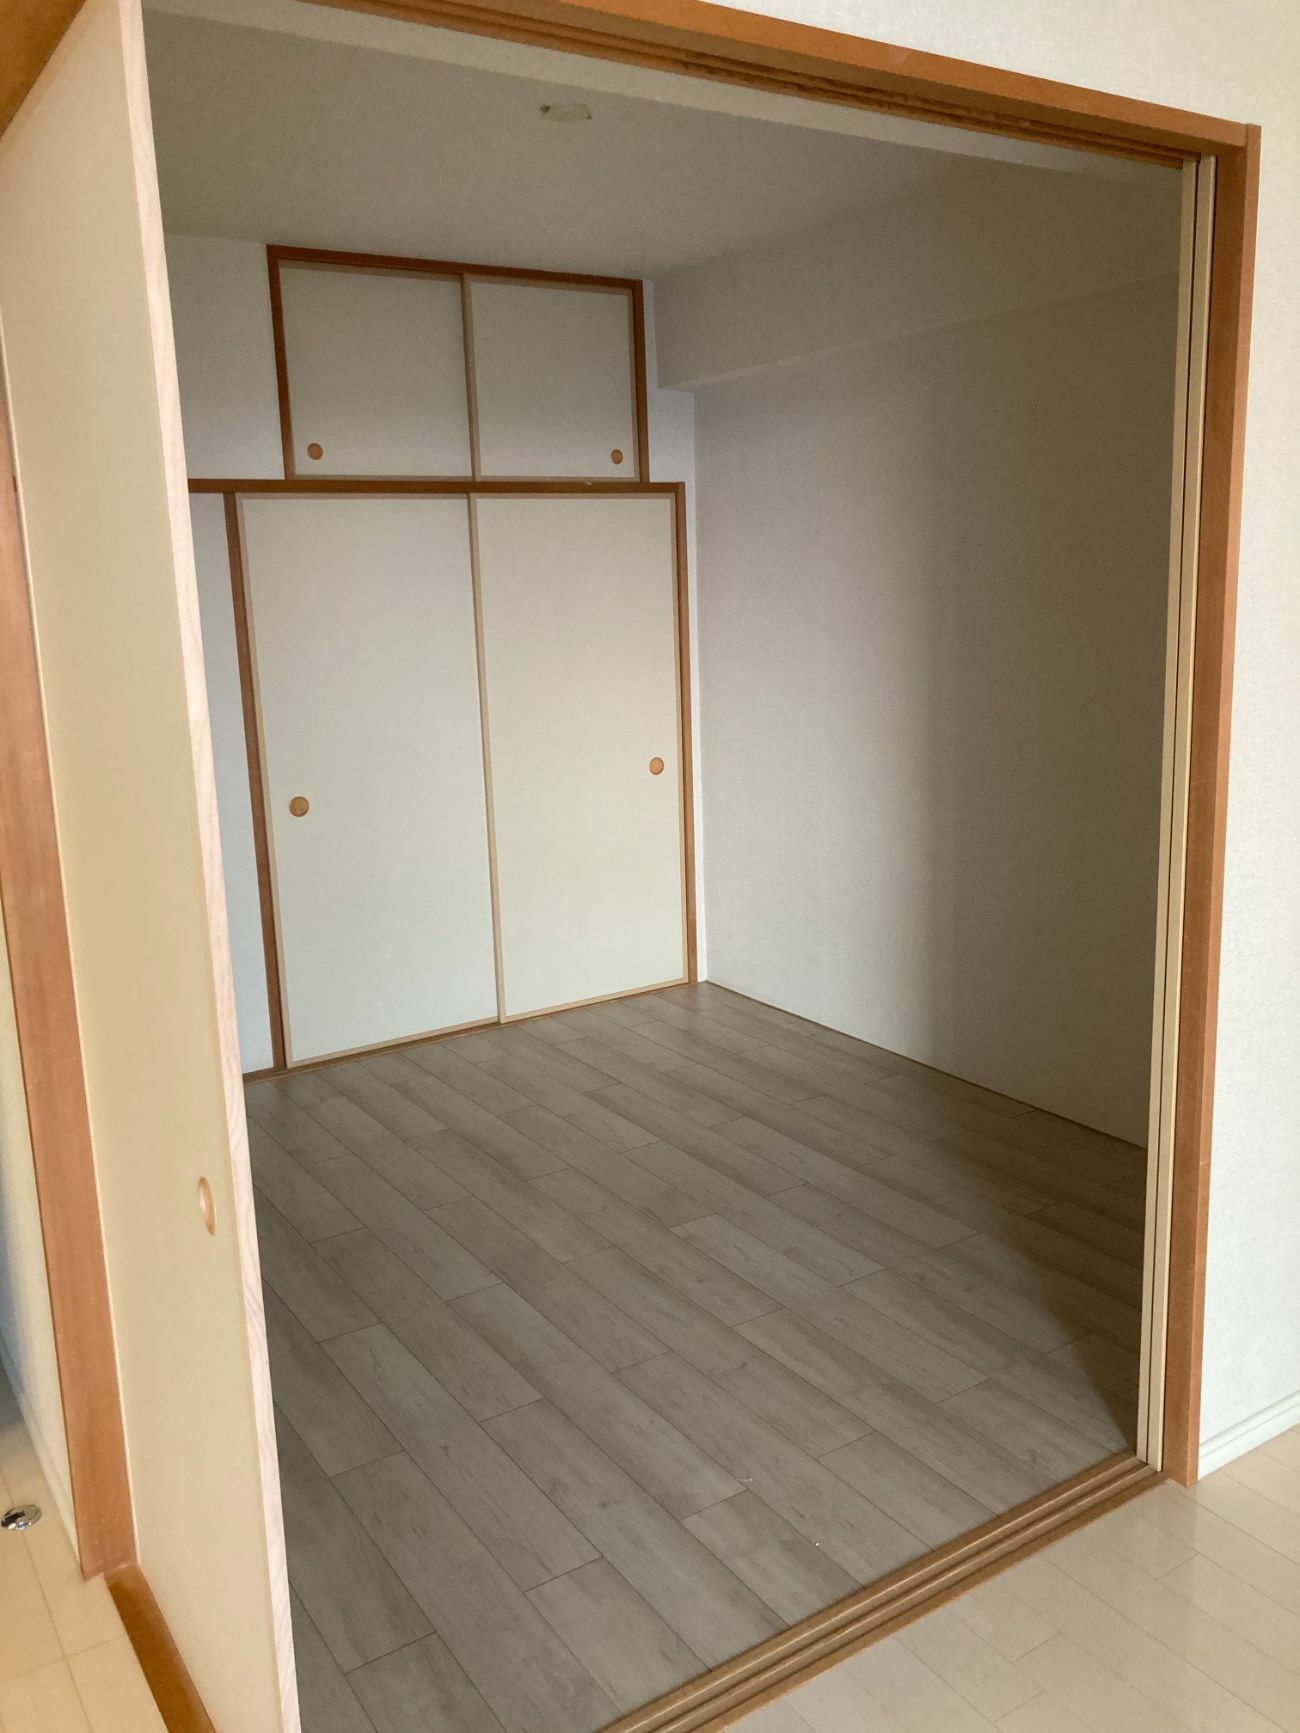 【埼玉県八潮市】M様邸マンション内装和室から洋室に変更工事が完了しました。 画像